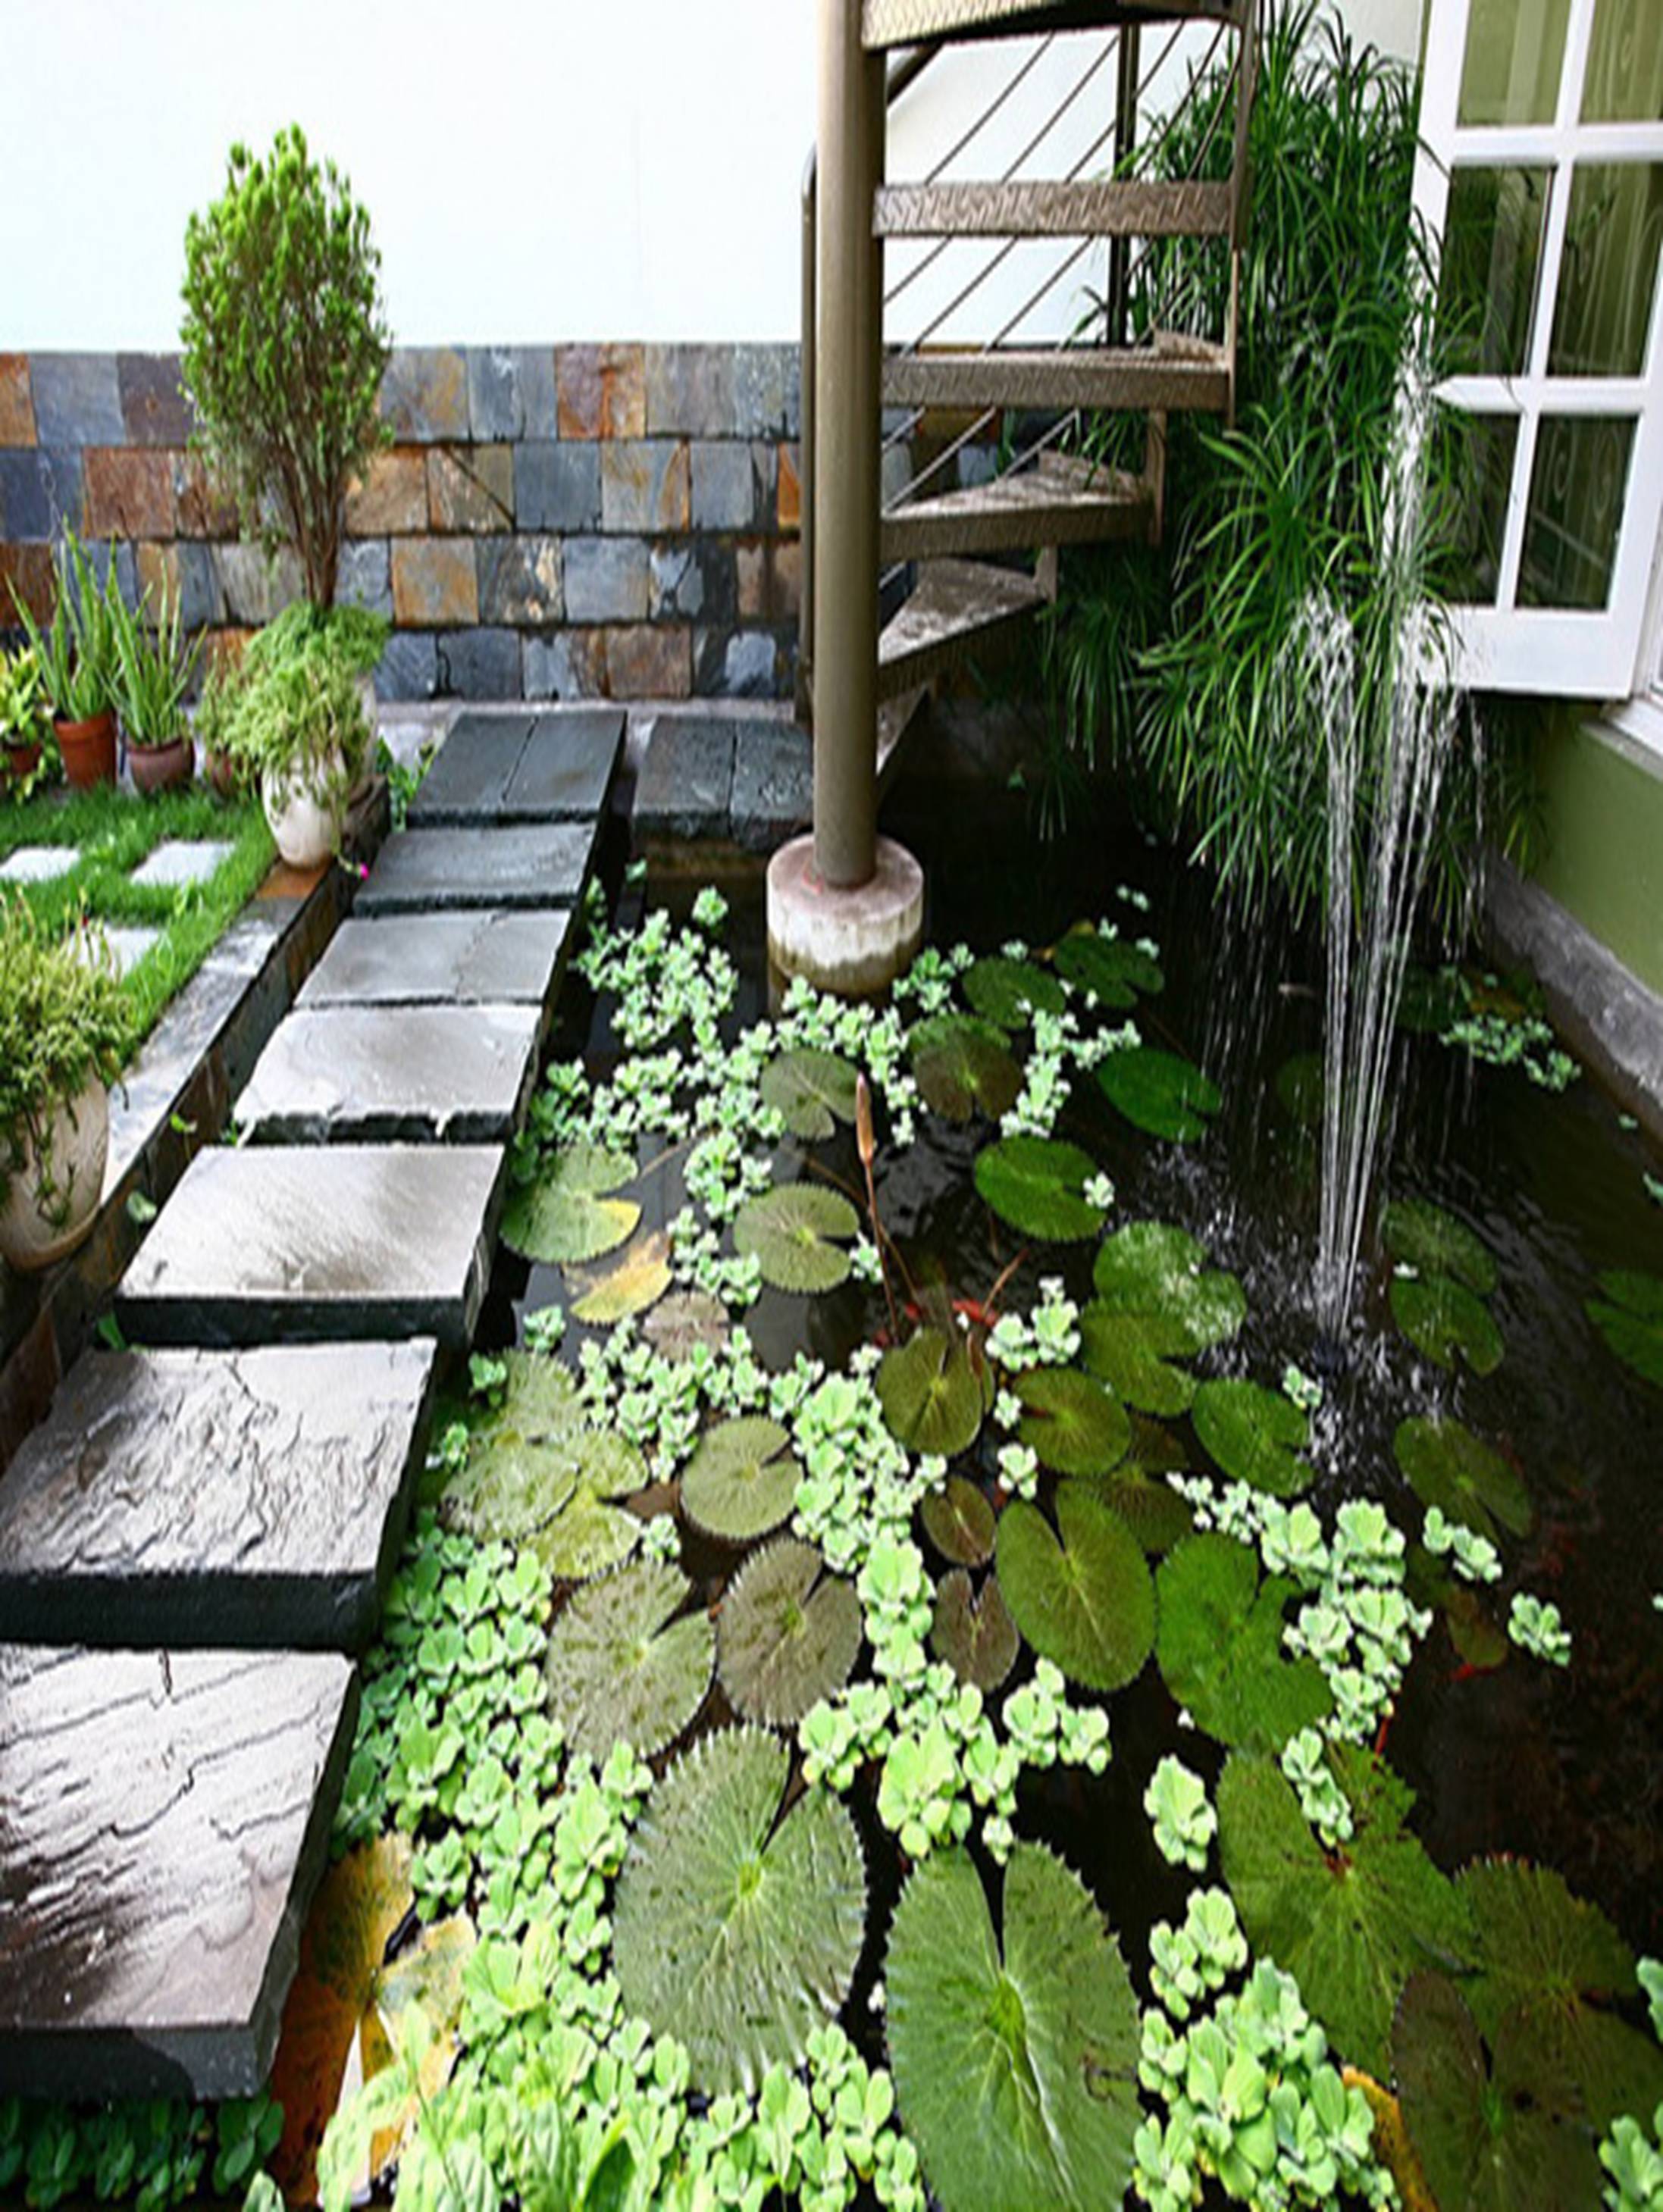 113123baoxaydung image012 Thiết kế và cải tạo nhà với vườn xanh trên mái